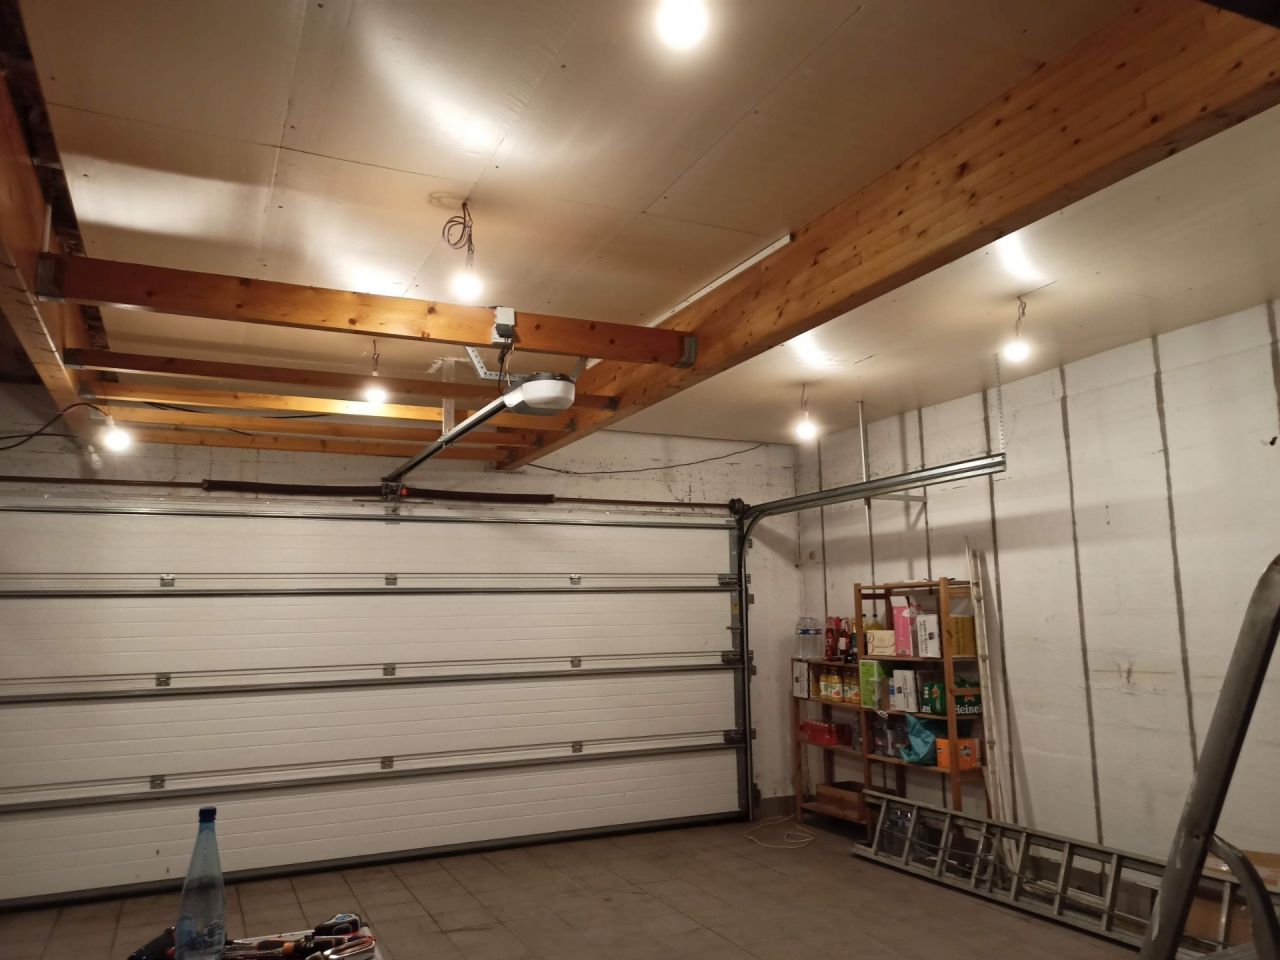 L'isolation du garage semble indispensable pour éviter les déperditions de l'appartement situé au dessus.